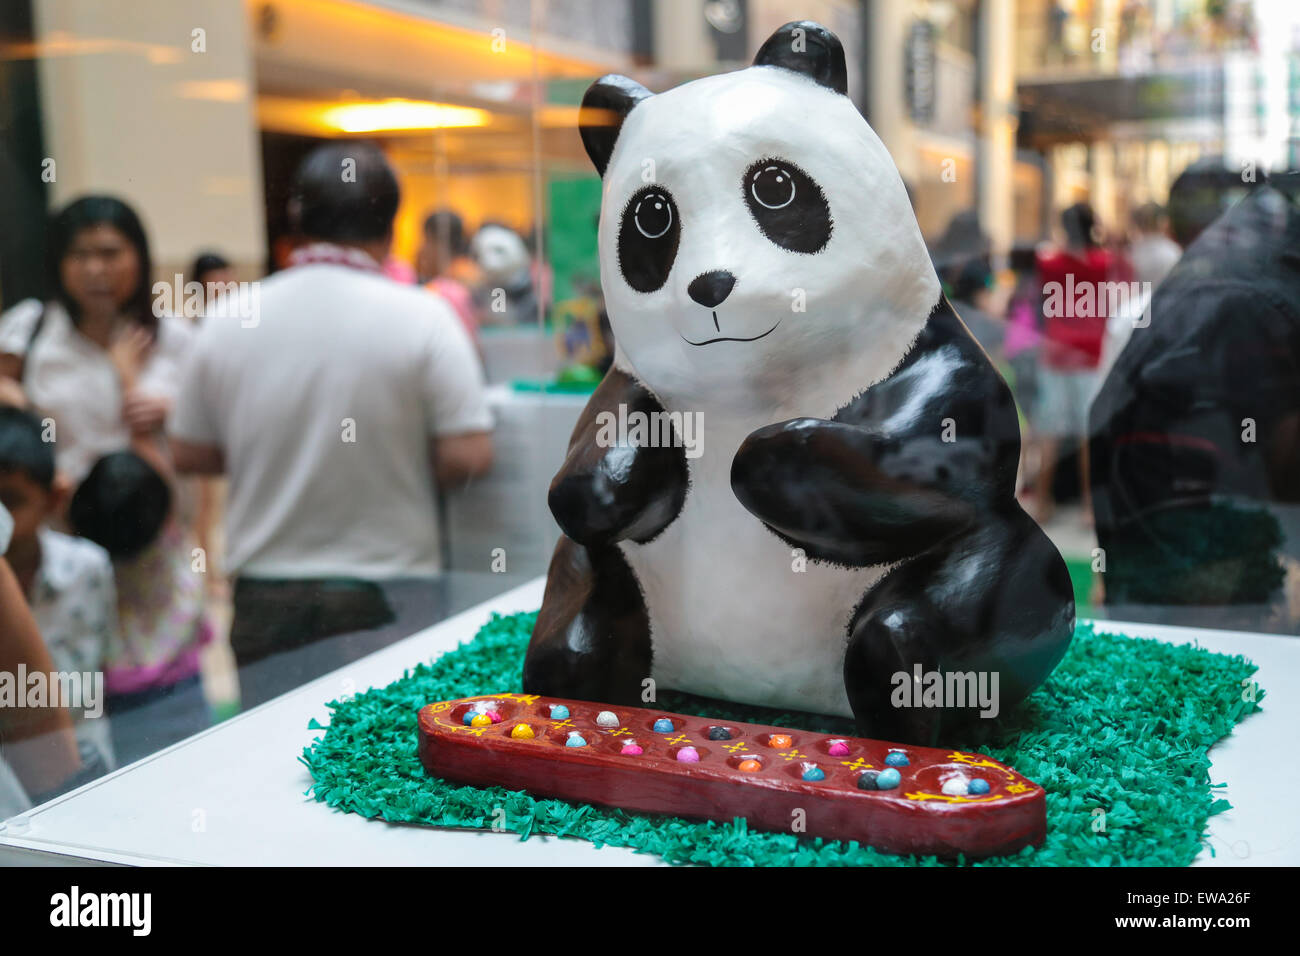 Mache panda playing congkak at 1600 Pandas campaign by WWF at Publika shopping mall, Kuala Lumpur Malaysia 2015 Stock Photo